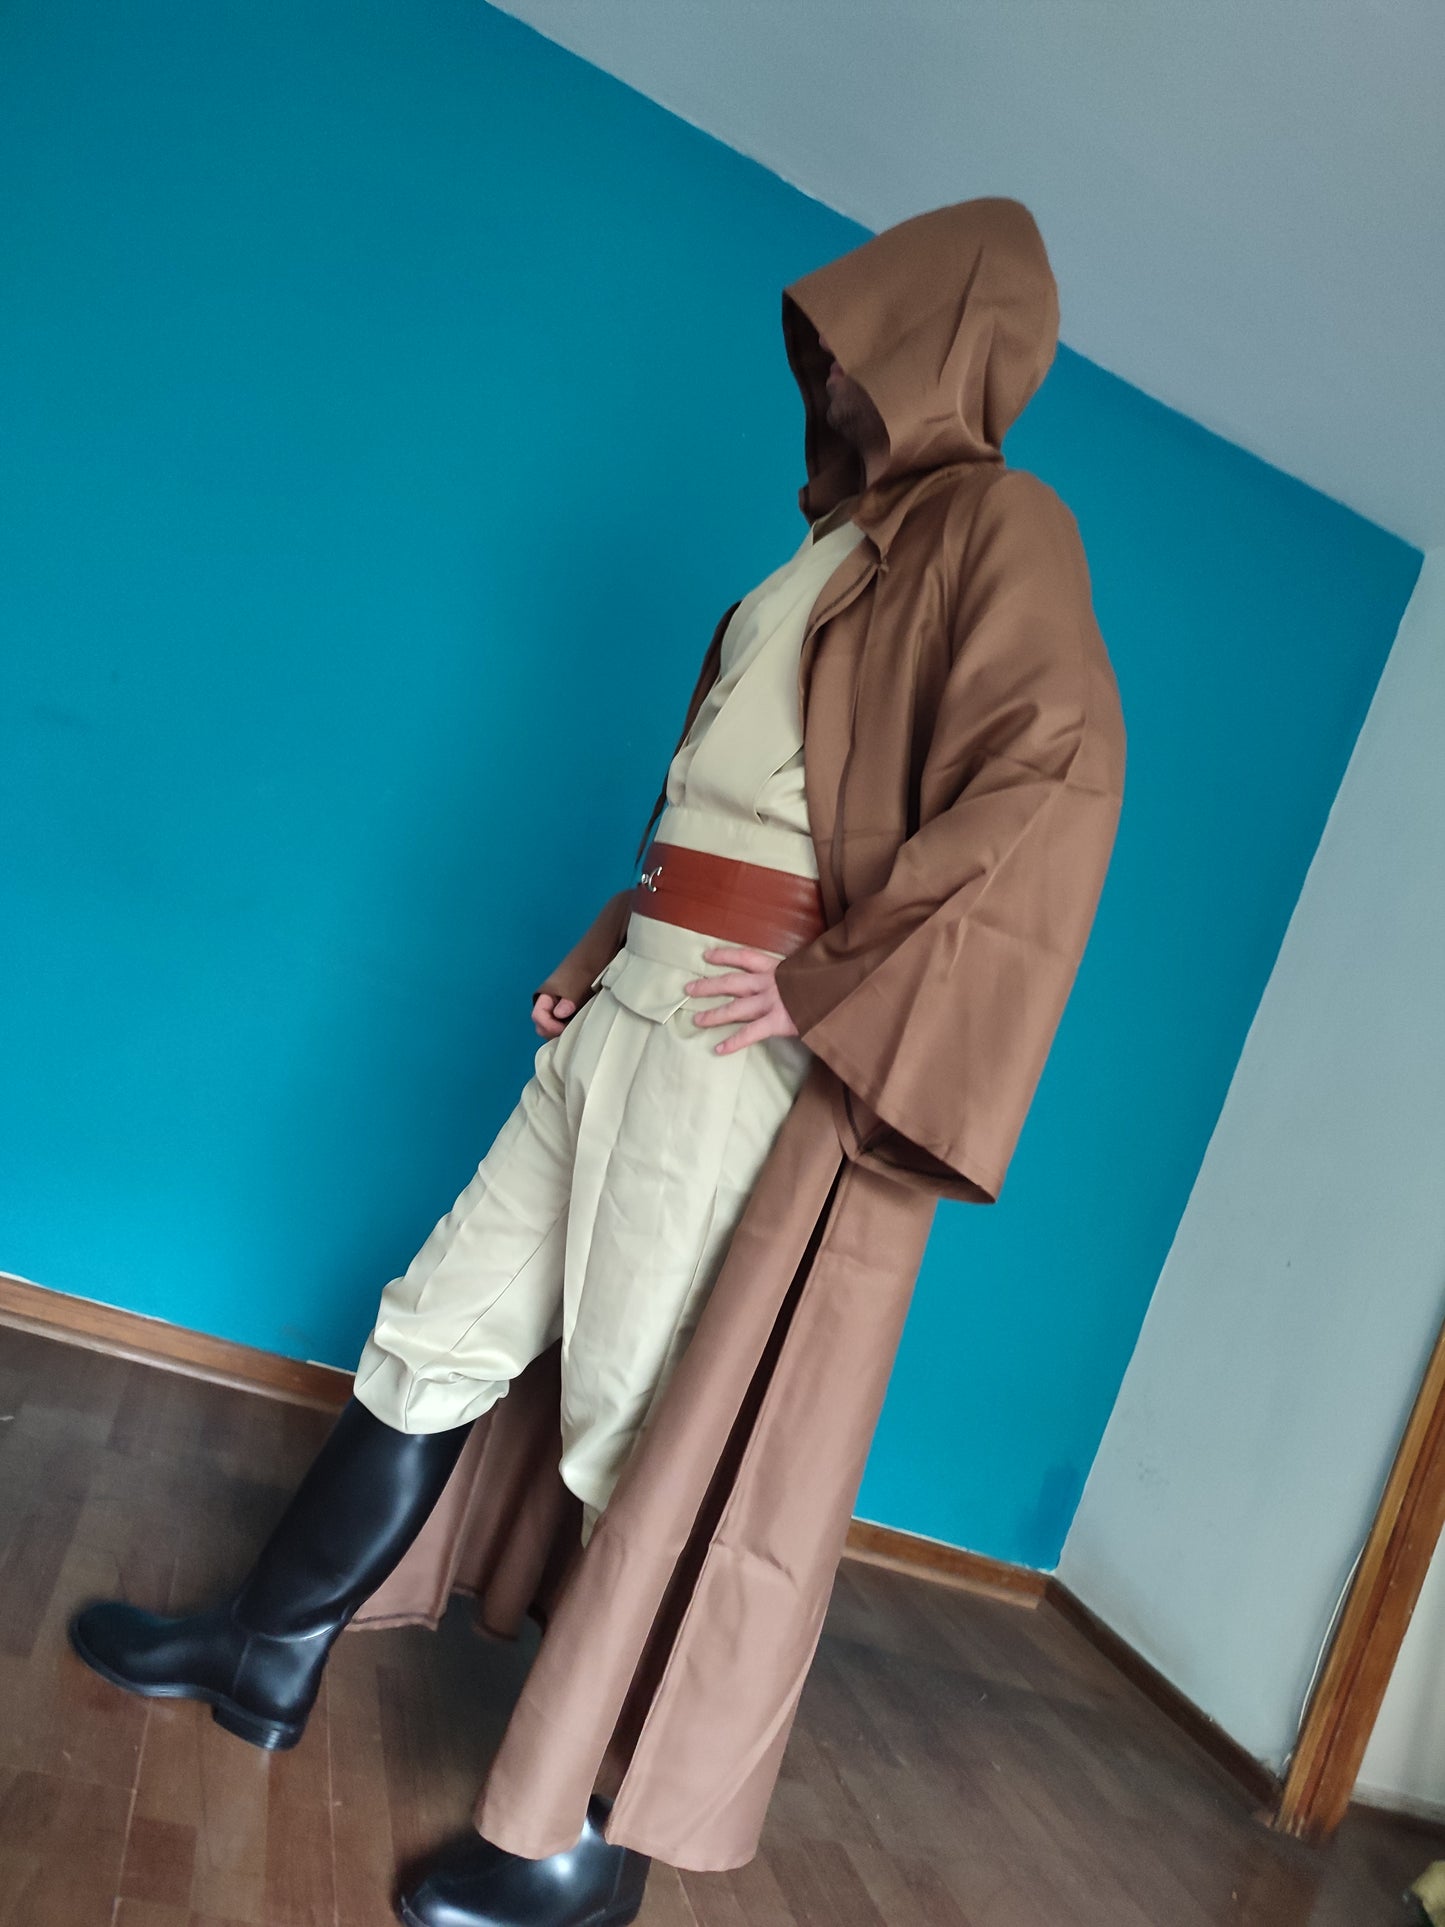 Full Jedi Suit